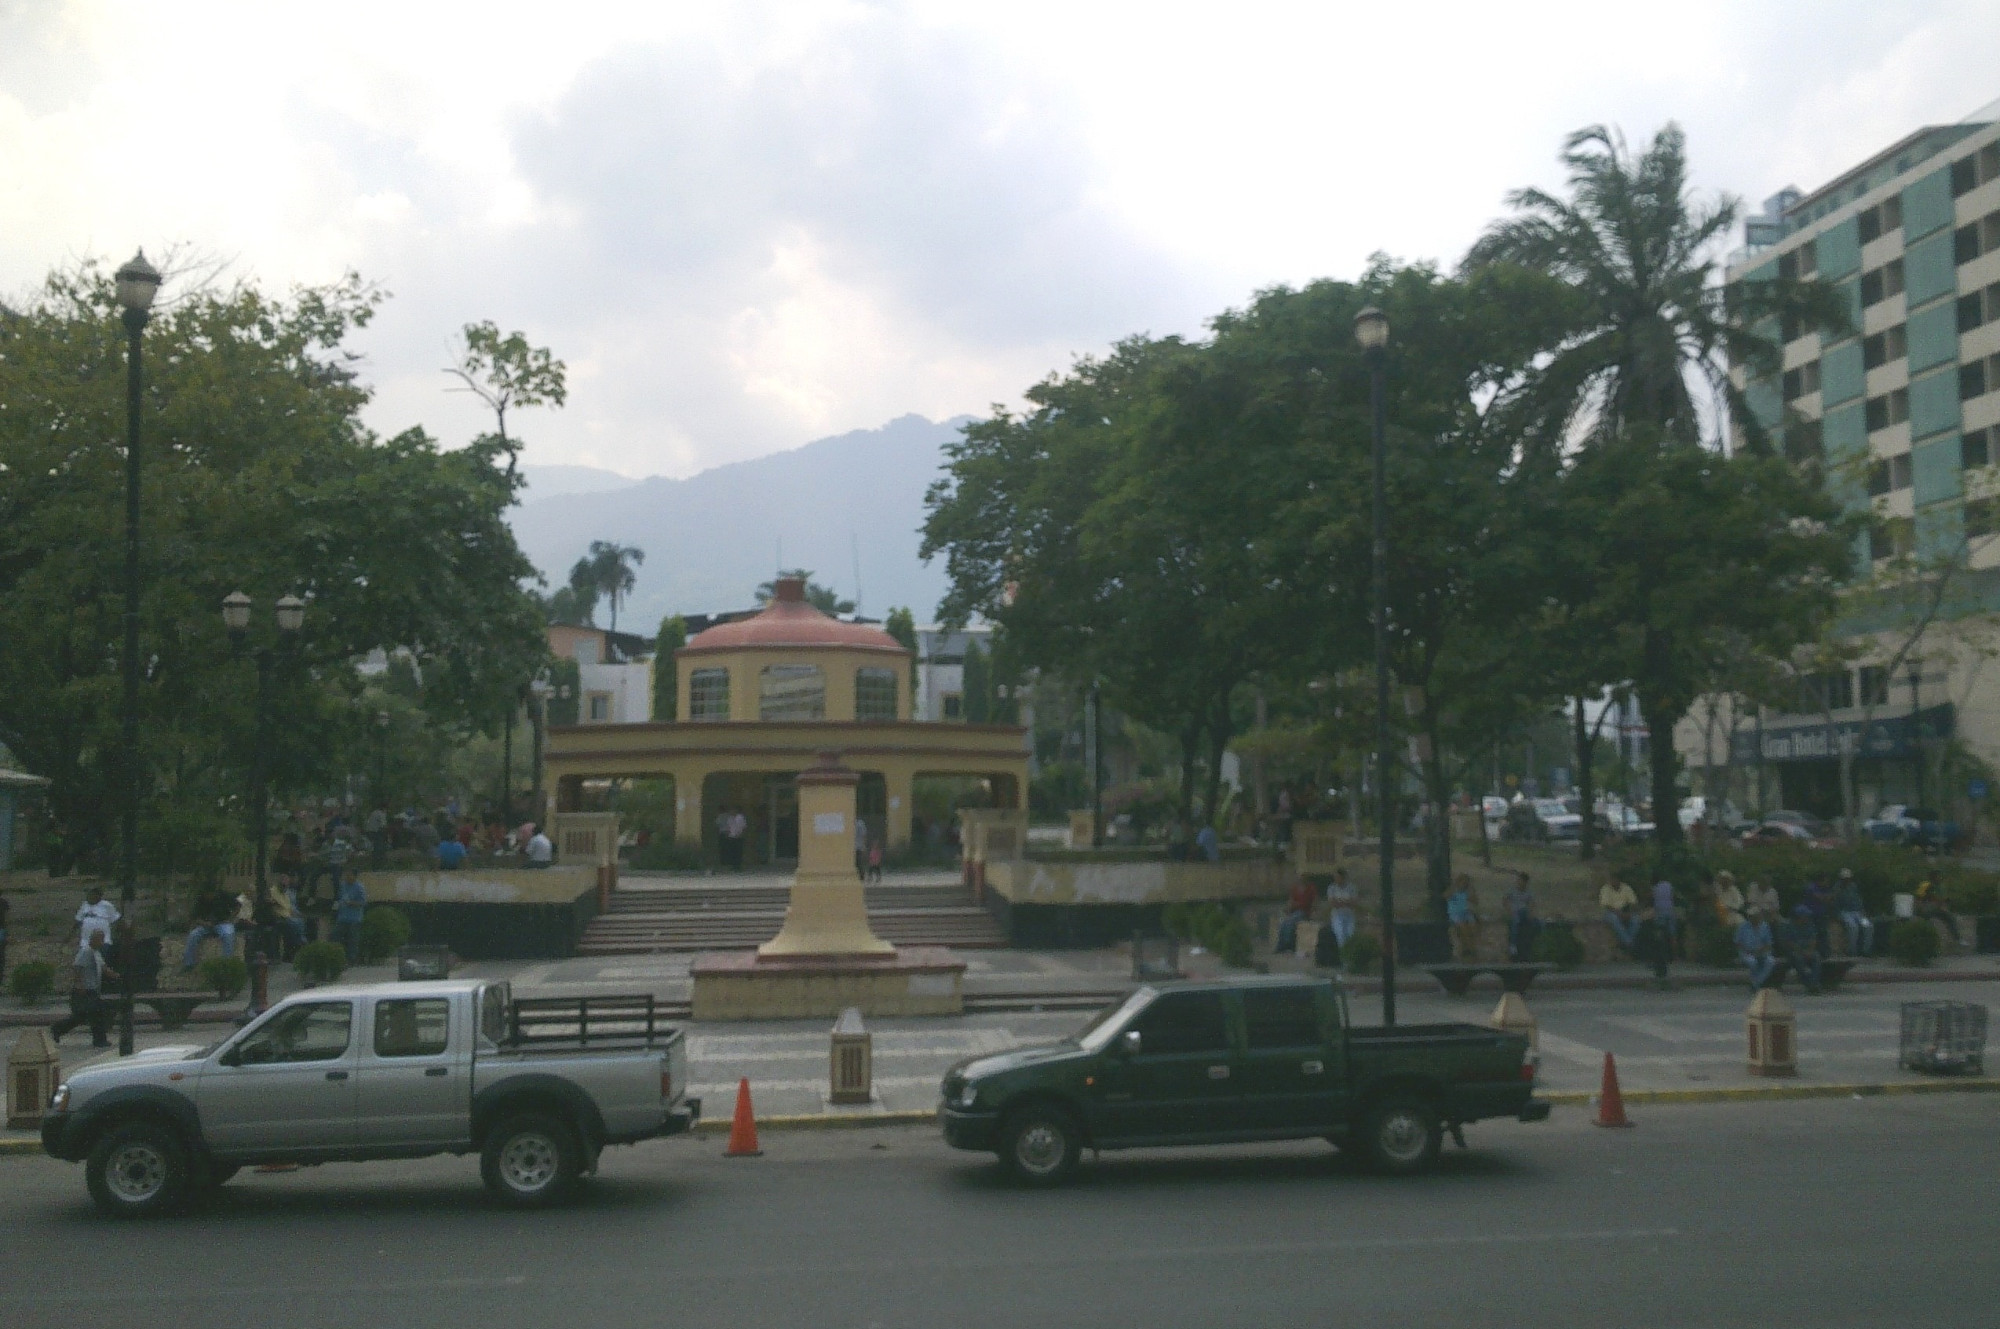 San Pedro Sula, Honduras